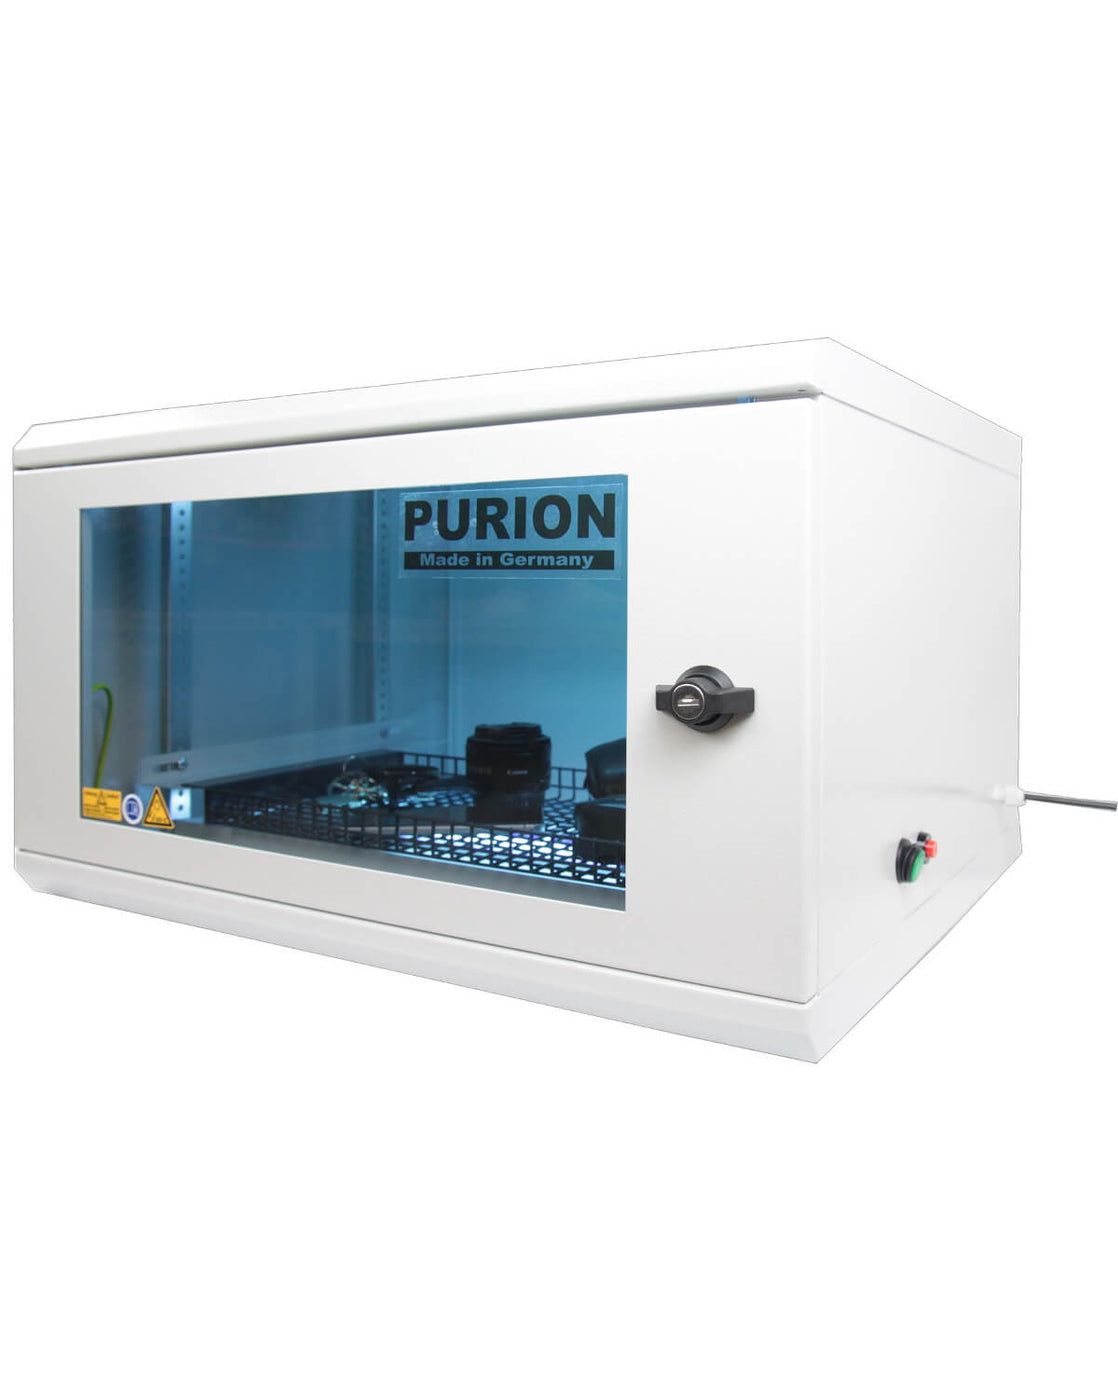 Die PURION GmbH nutzt UV-C-Licht zur Desinfektion und sorgt mit der PURION UVC Box Medium Basic für hohe Hygienestandards.